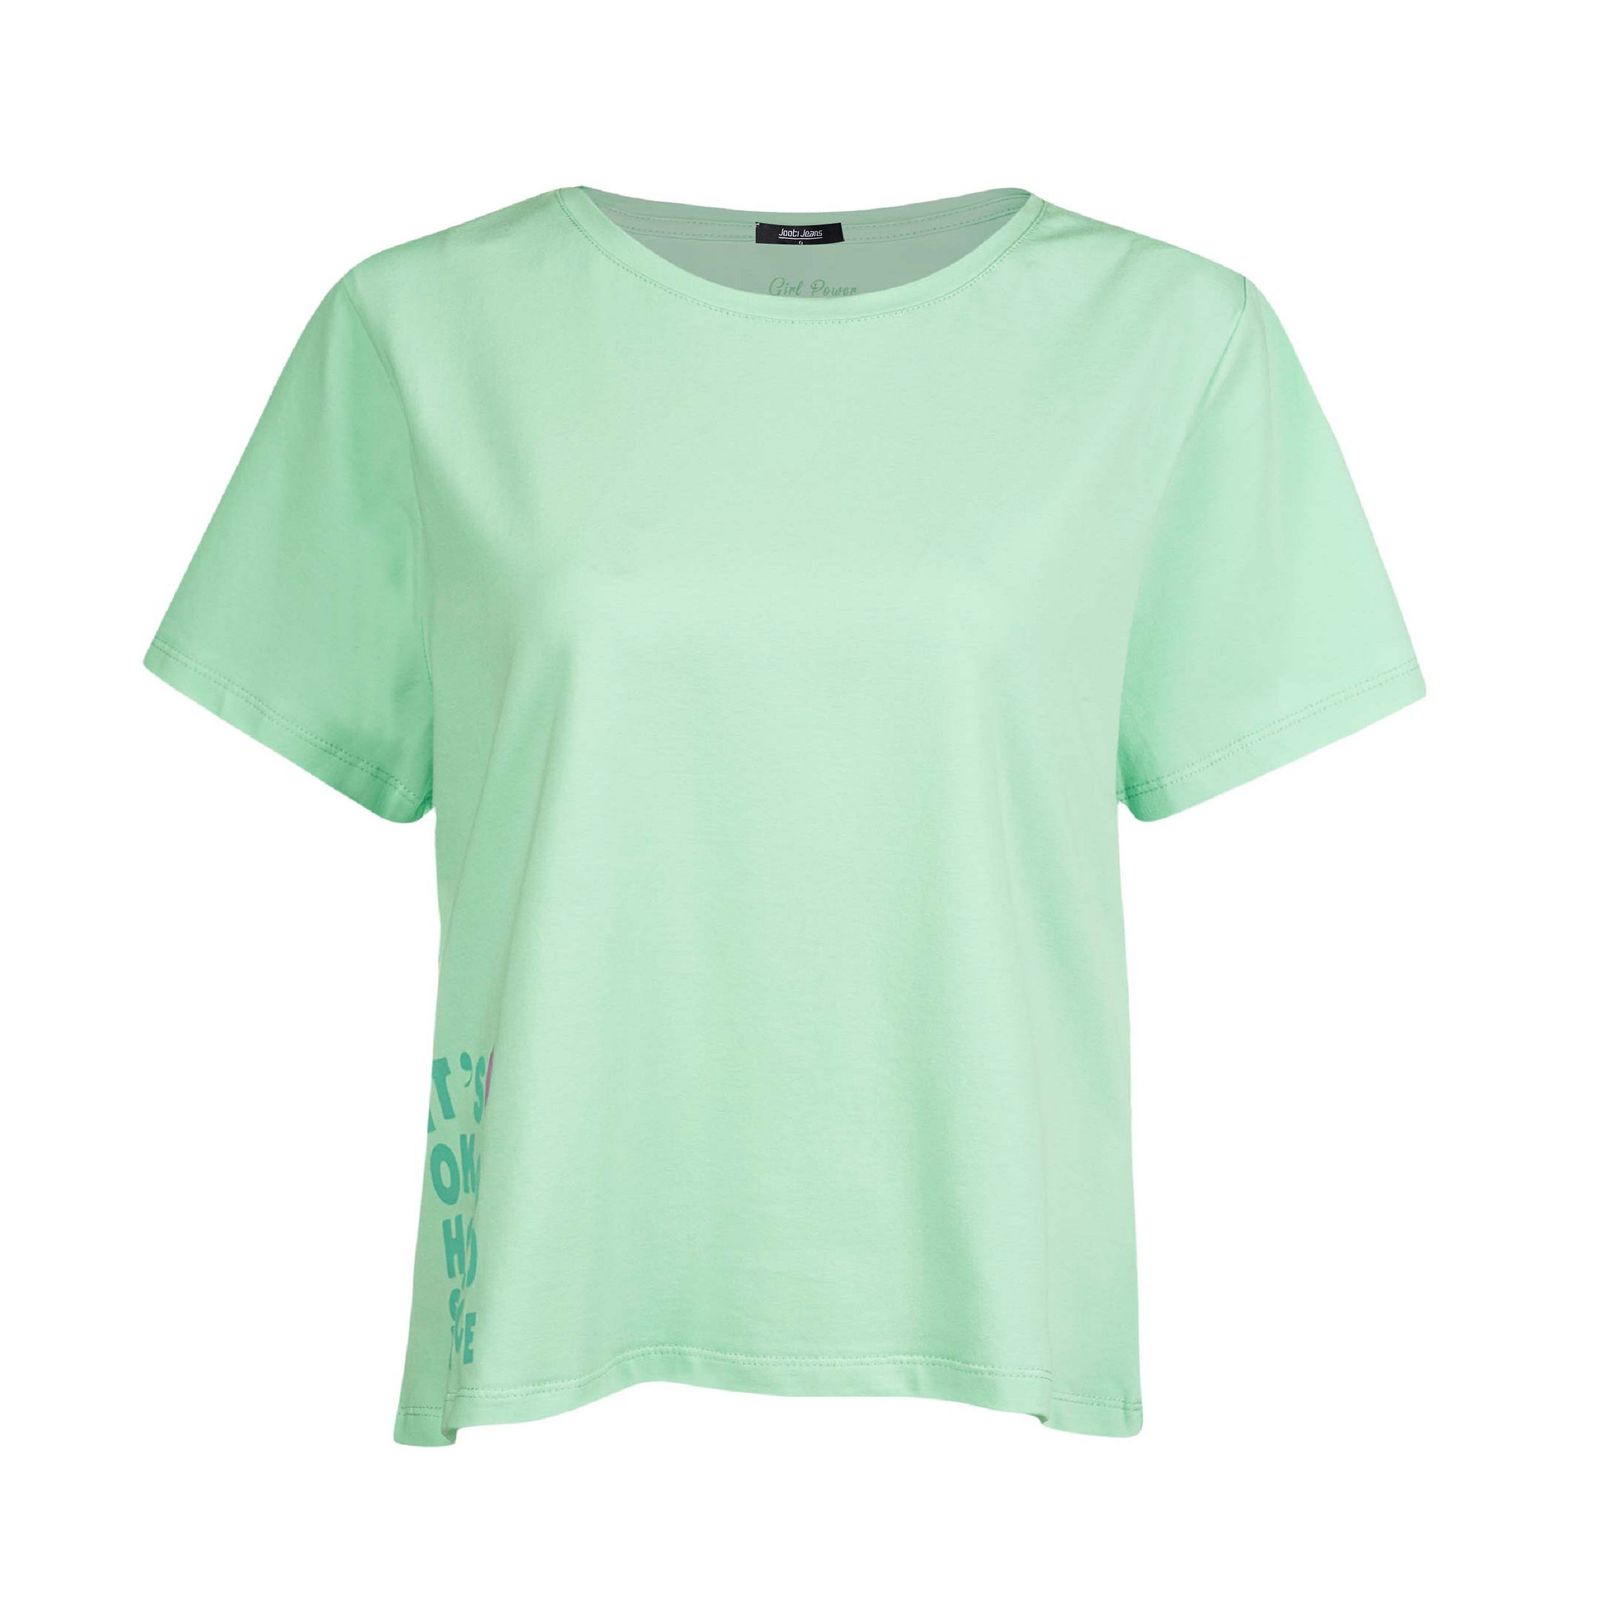 تی شرت آستین کوتاه زنانه جوتی جینز مدل یقه گرد کد 1551257 رنگ سبز روشن -  - 1